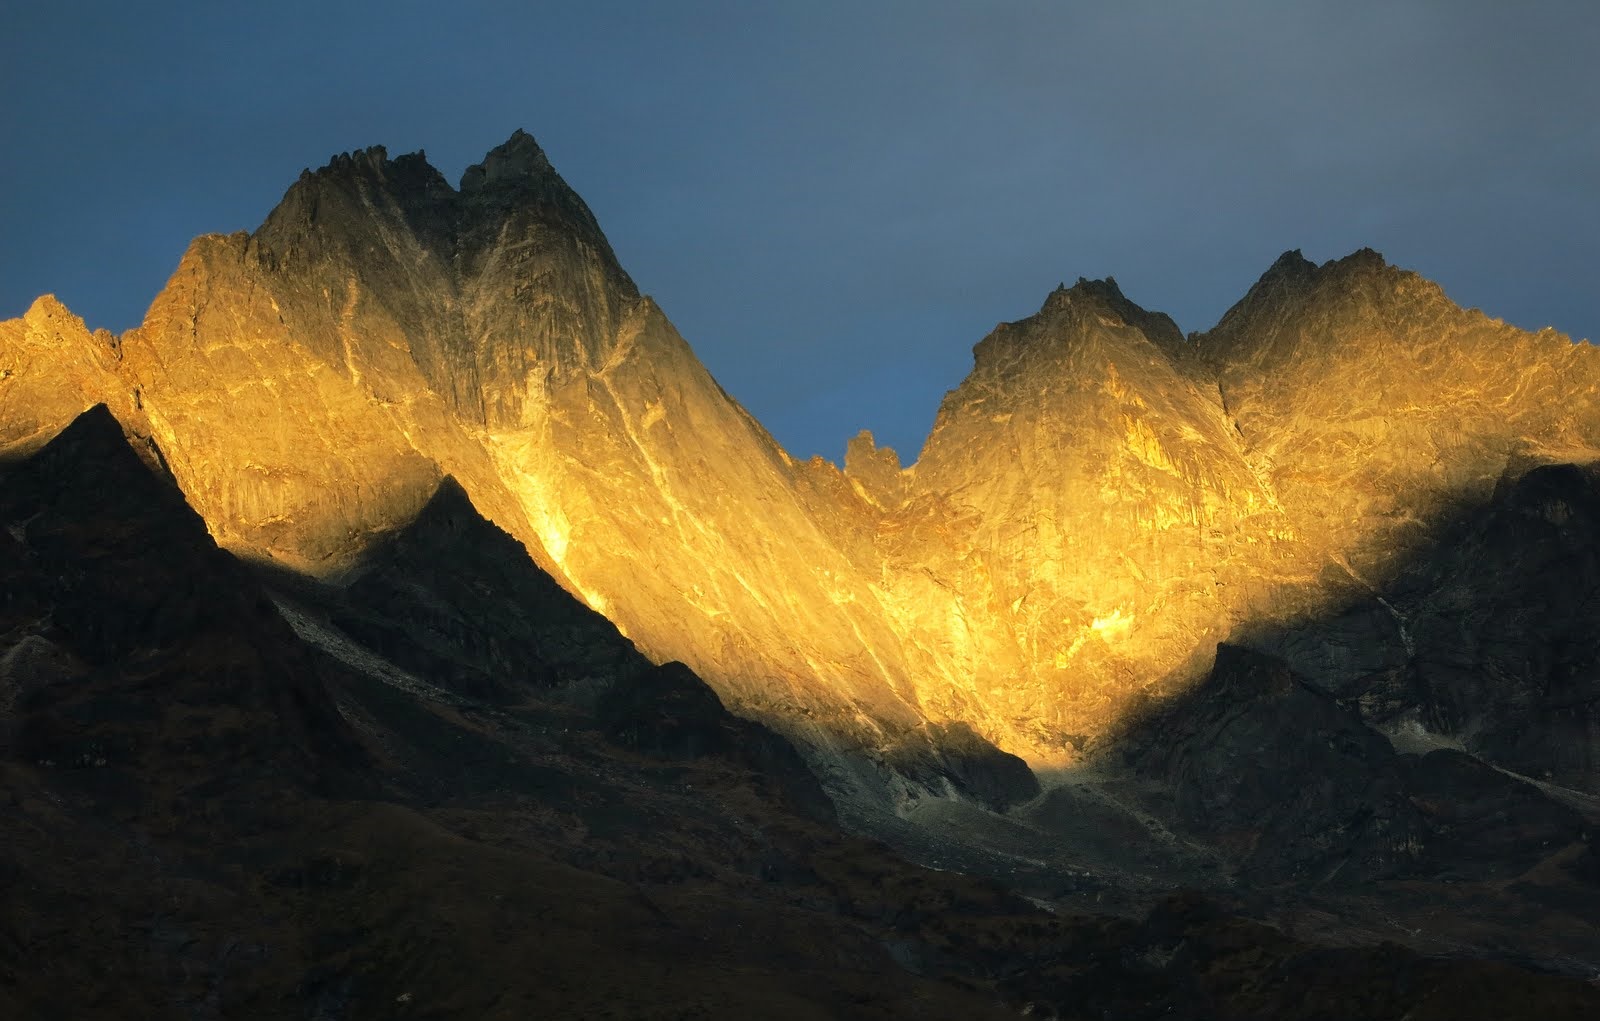 Mount Khumbi Yui Lha